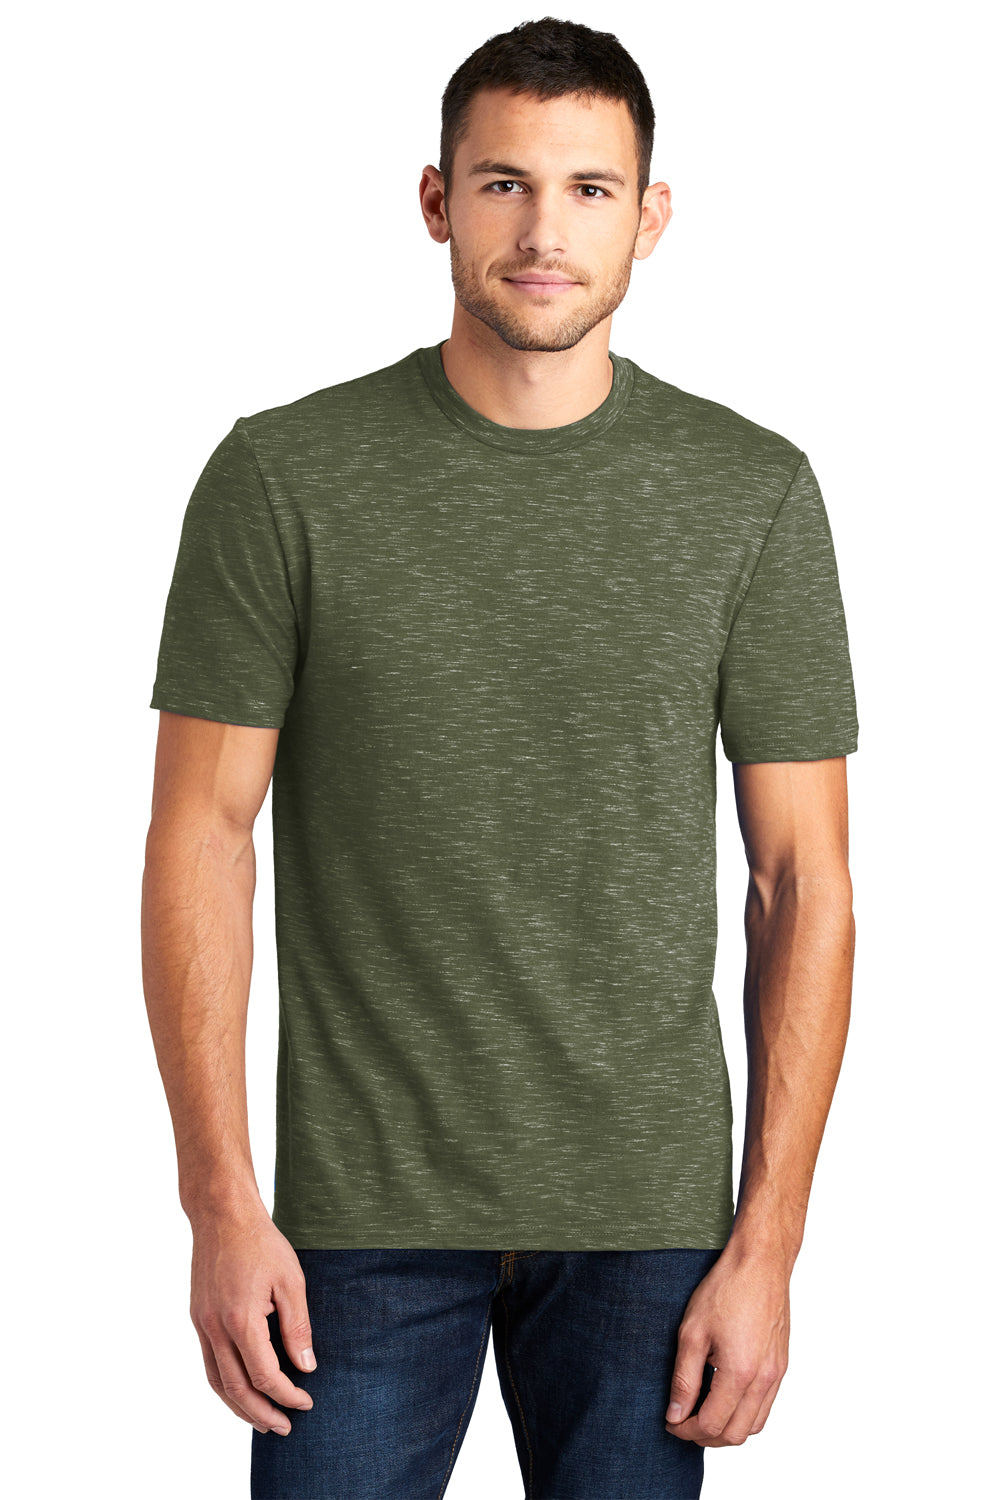 District DT564 Mens Medal Short Sleeve Crewneck T-Shirt Olive Green Front